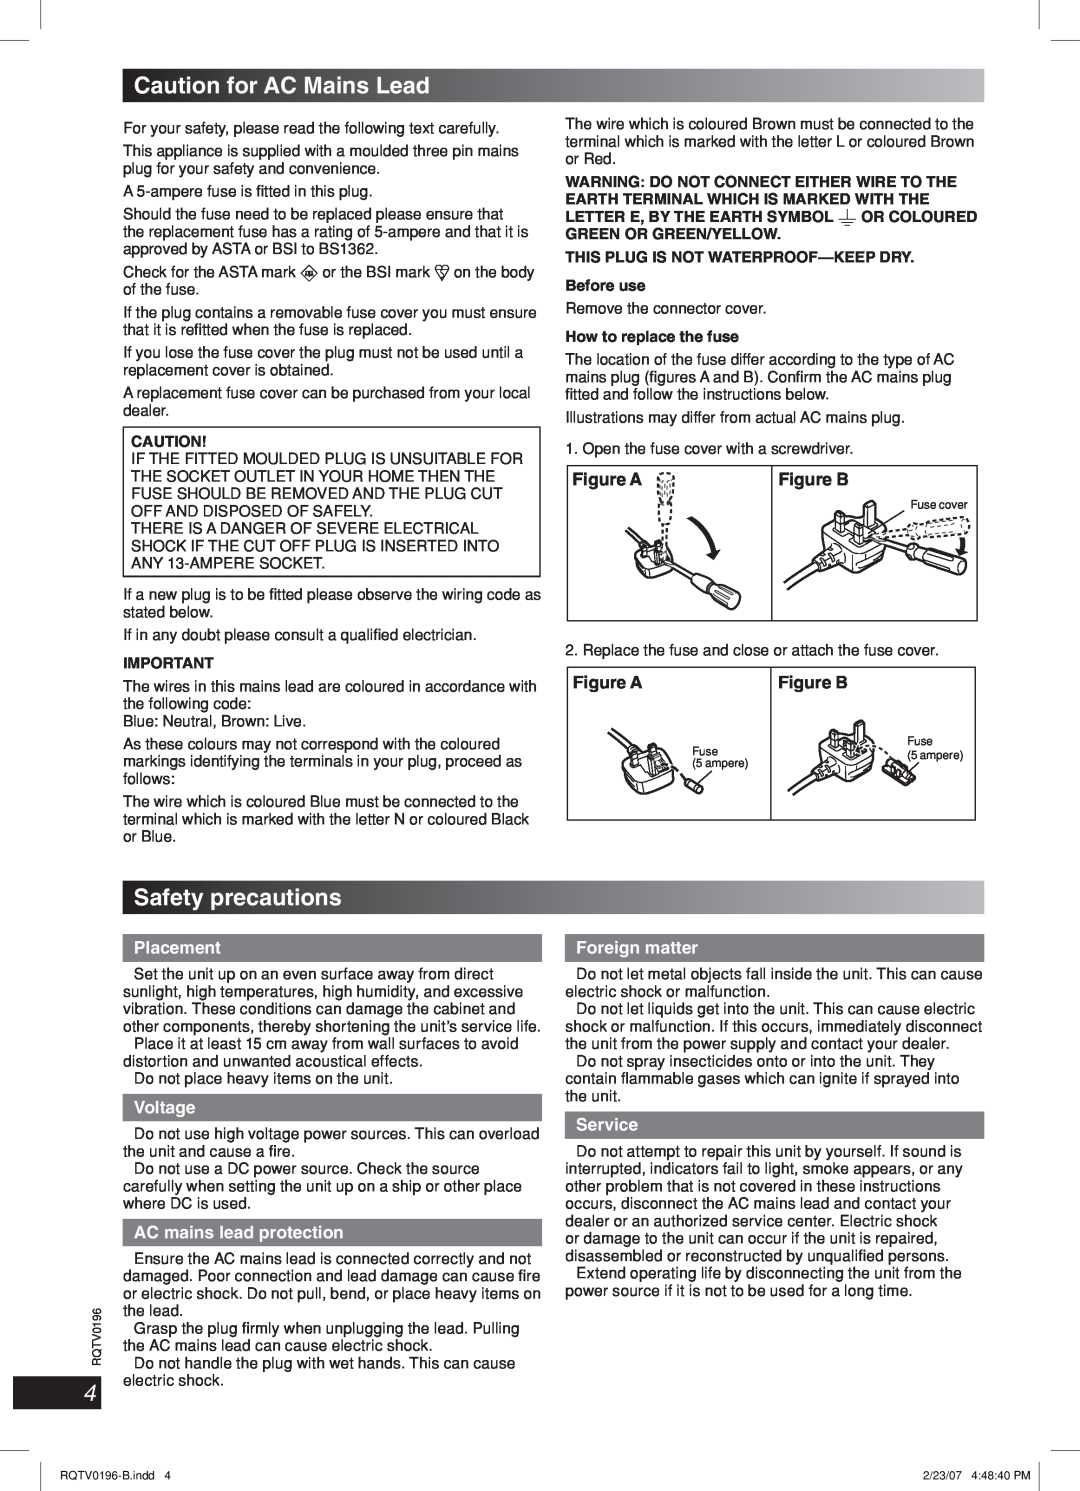 Panasonic SC-AK250 Caution for AC Mains Lead, Safety precautions, Español Dansk Français, Lang, Placement, Voltage 